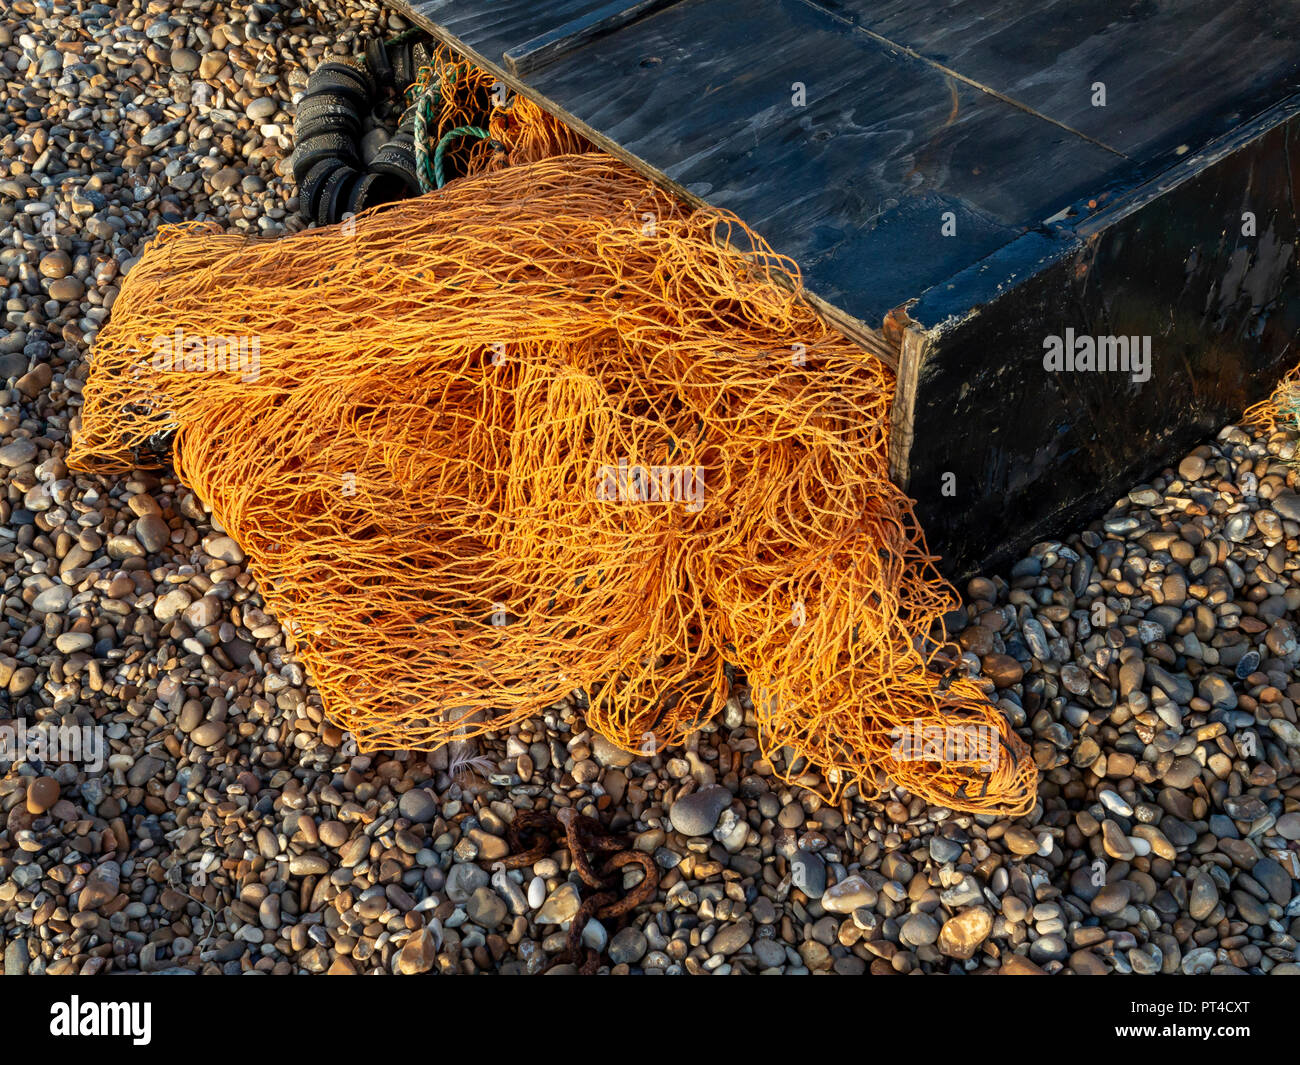 Arancio in nylon rete da pesca fuoriuscita da un nero scatola di legno su una spiaggia ghiaiosa Foto Stock